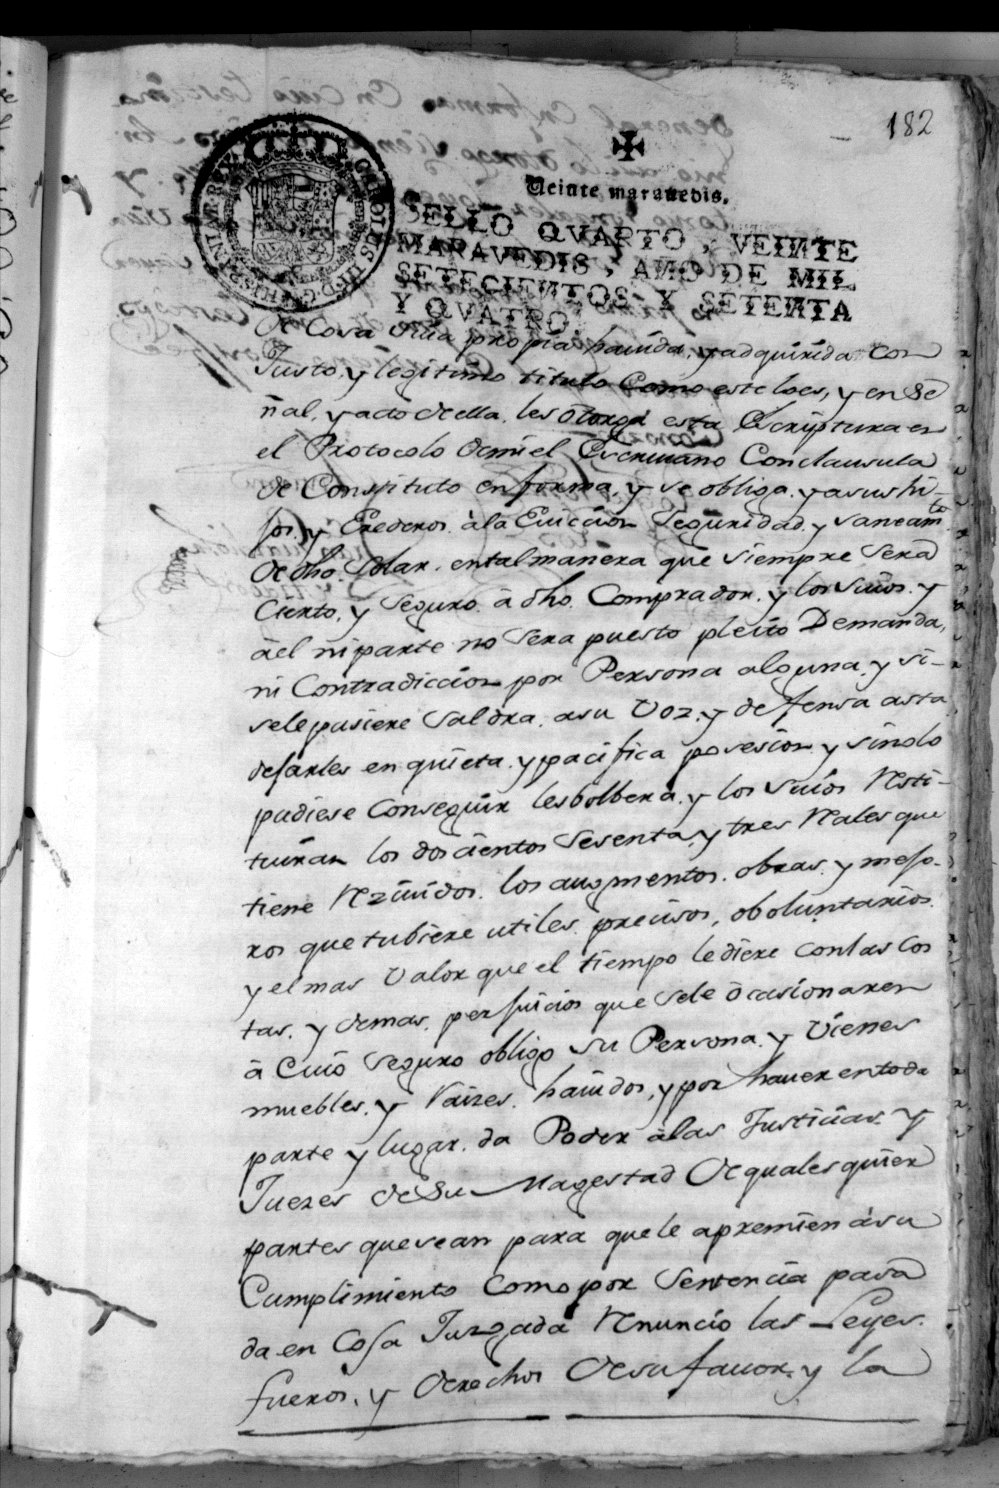 Registro de Francisco Guardiola de Aragón, Alcantarilla. Año 1774.